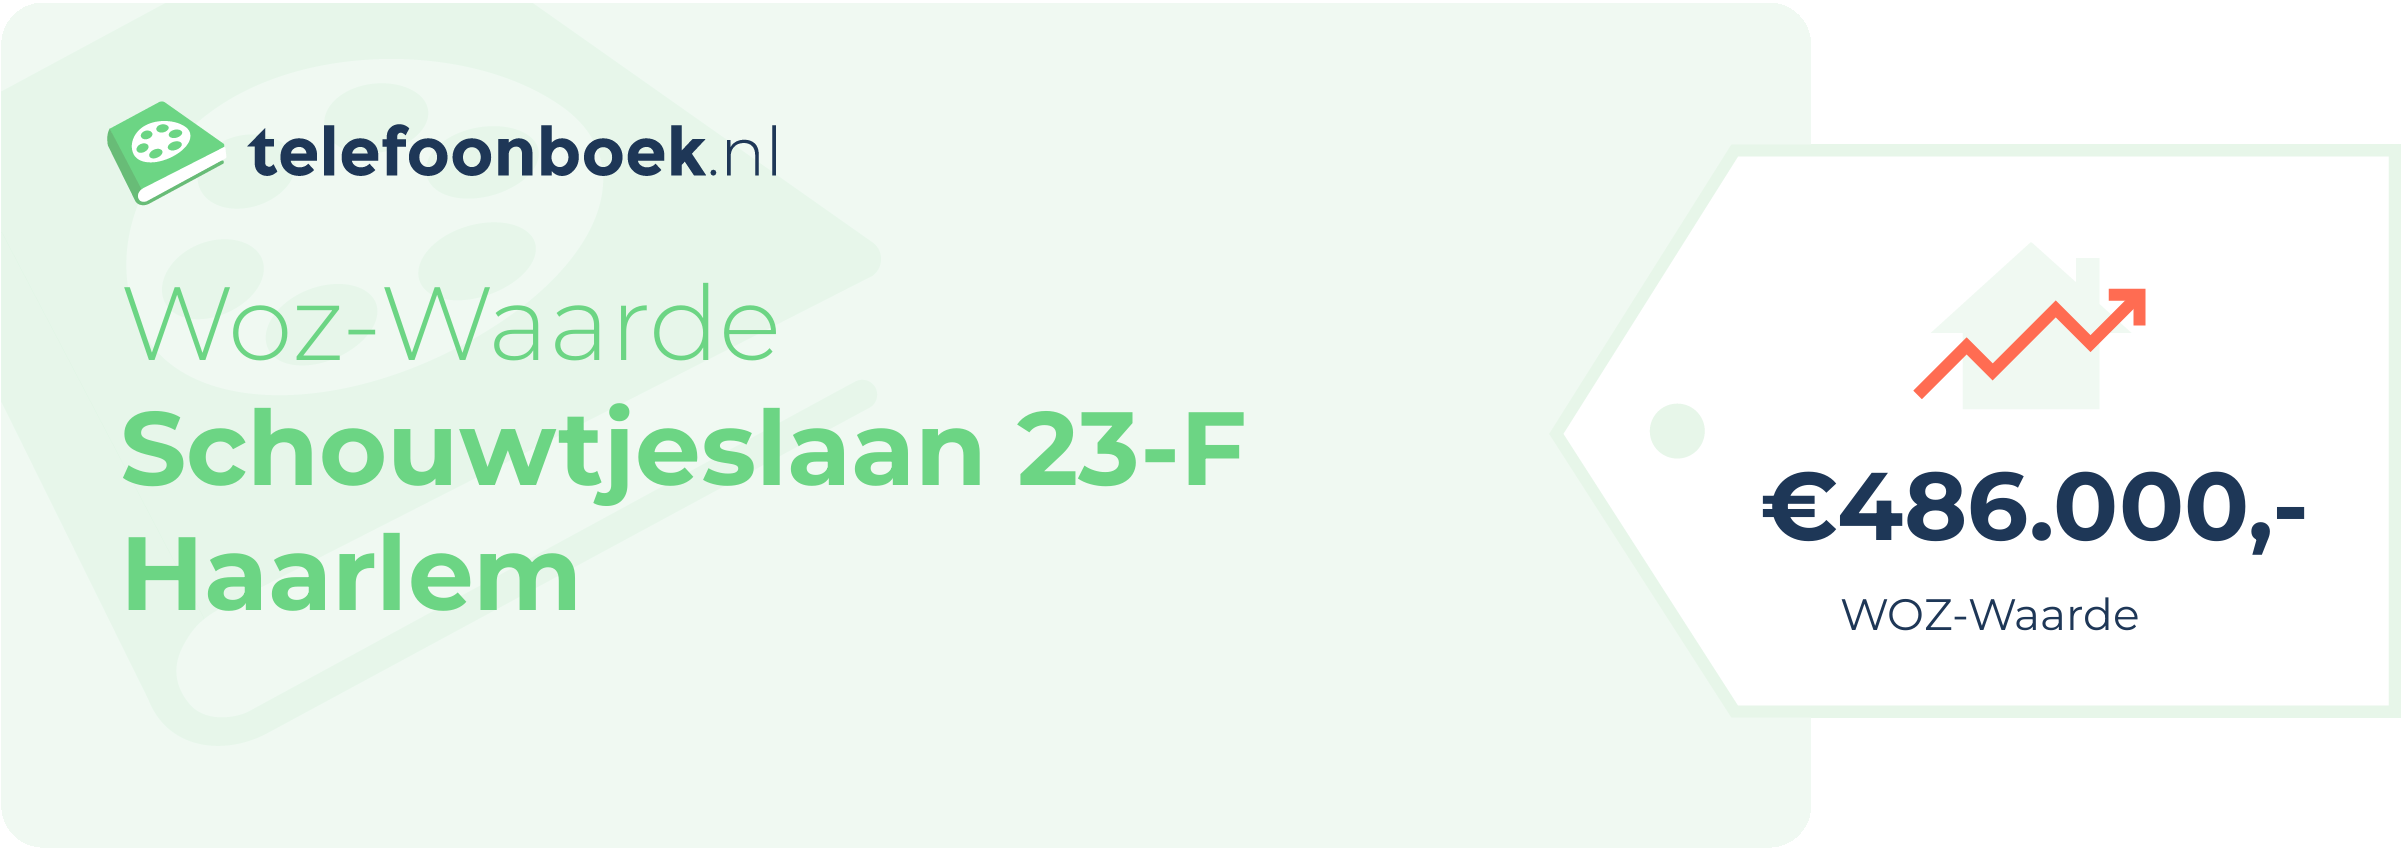 WOZ-waarde Schouwtjeslaan 23-F Haarlem